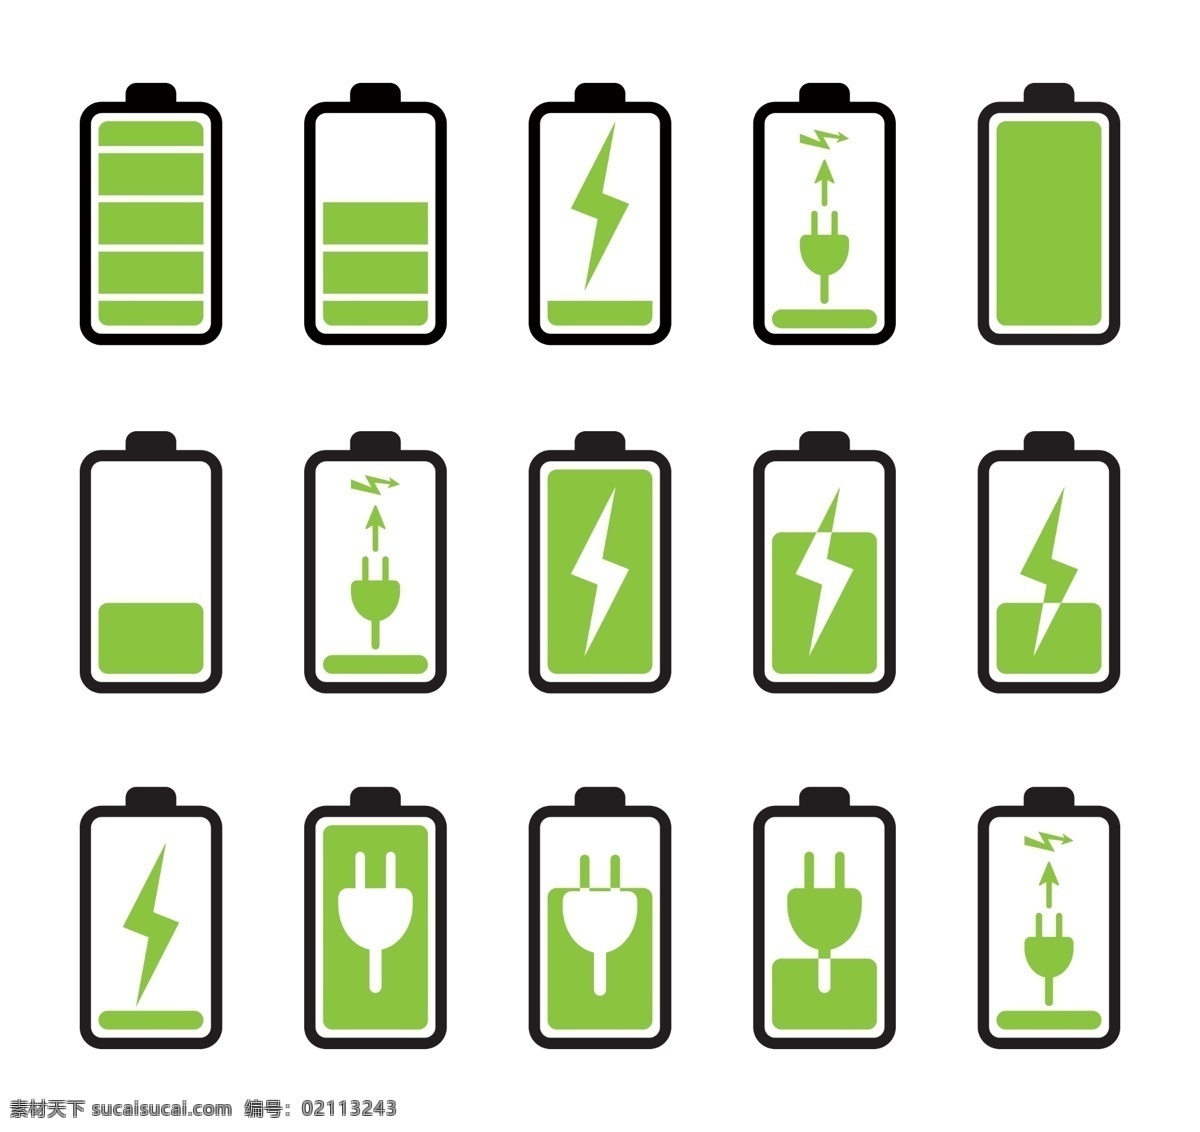 蓄电池 充电 电源 电量 电力 能源 动力 符号 标志 图形 图标 充电指示 插图 icons 彩色电池 电池设计 电池图标